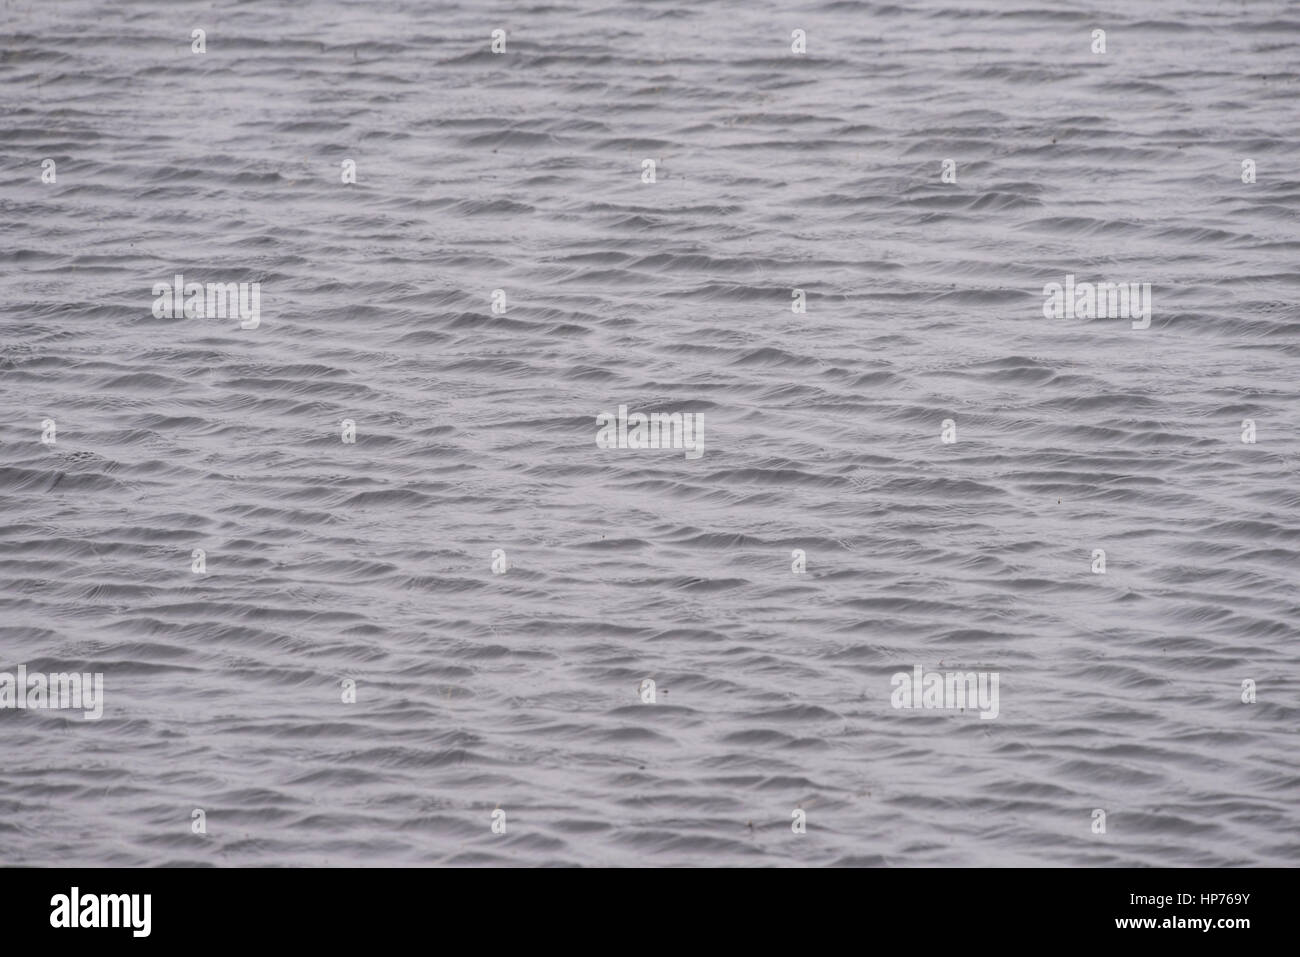 Wellen in einem Moor-Pool zeigt Wind geblasen Muster auf der Wasseroberfläche Stockfoto